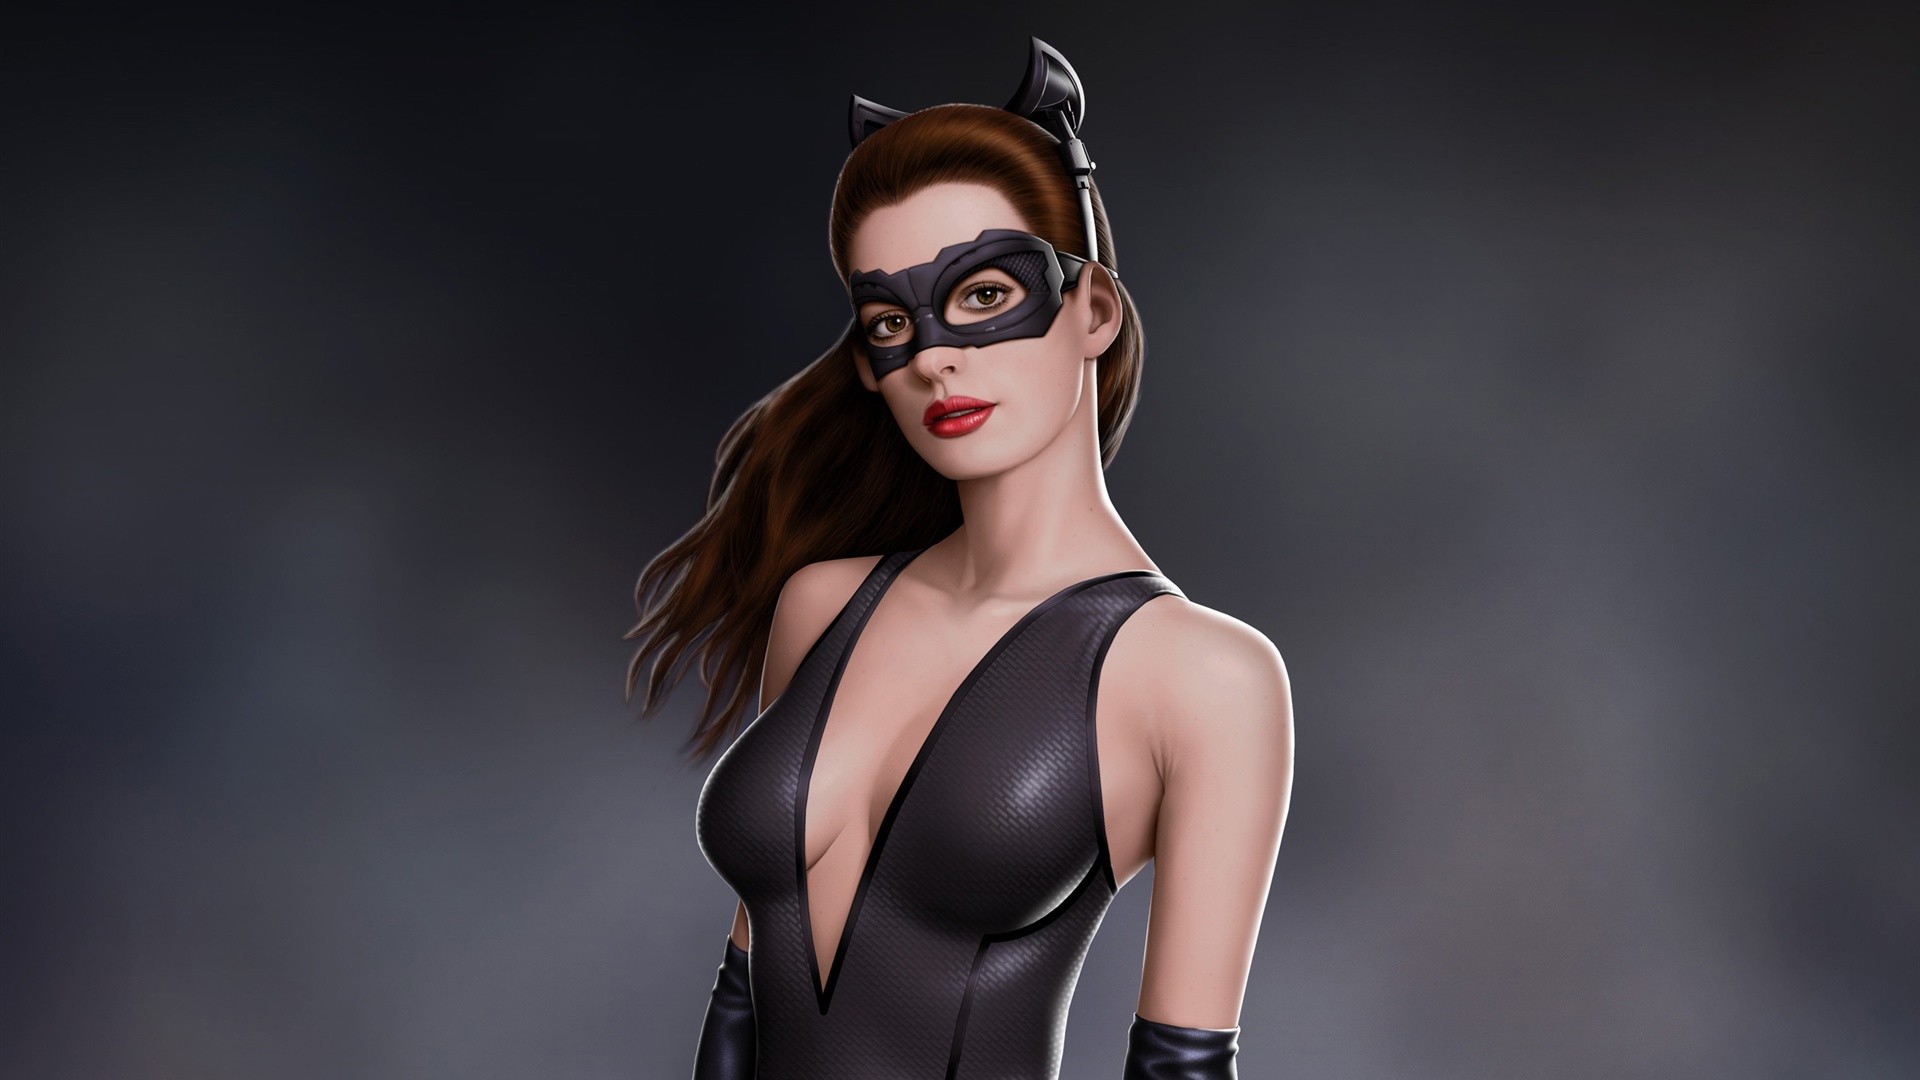 Anne Hathaway in Batman movie as catwoman Wallpaper, Desktop .